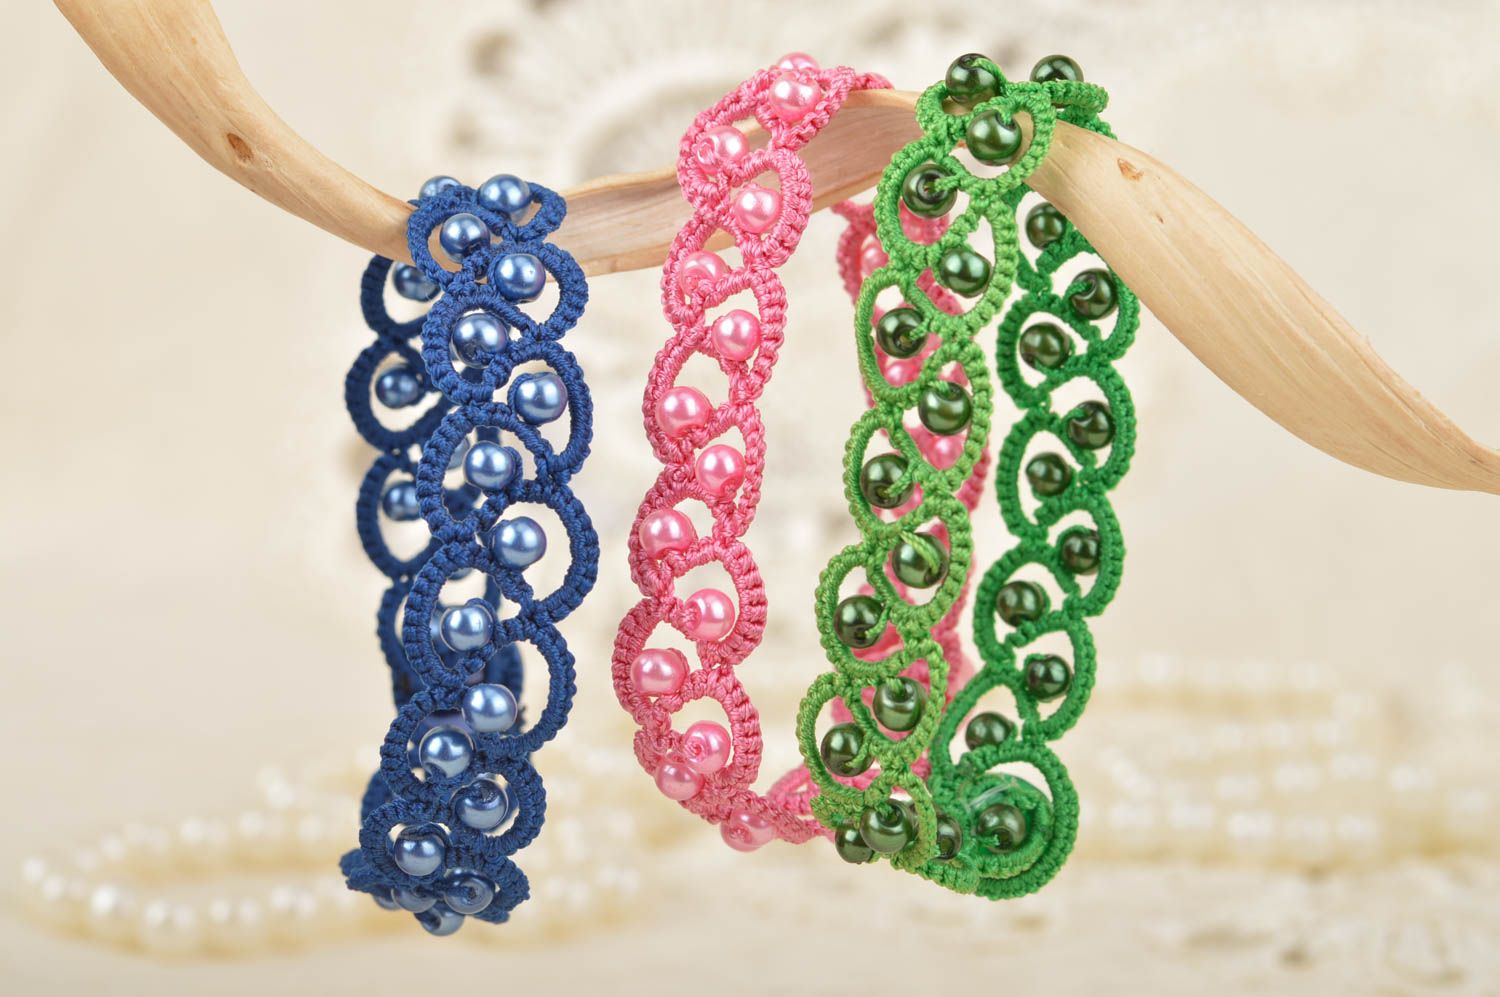 Комплект браслетов в технике фриволите синий розовый зеленый 3 изделия хенд мейд фото 1